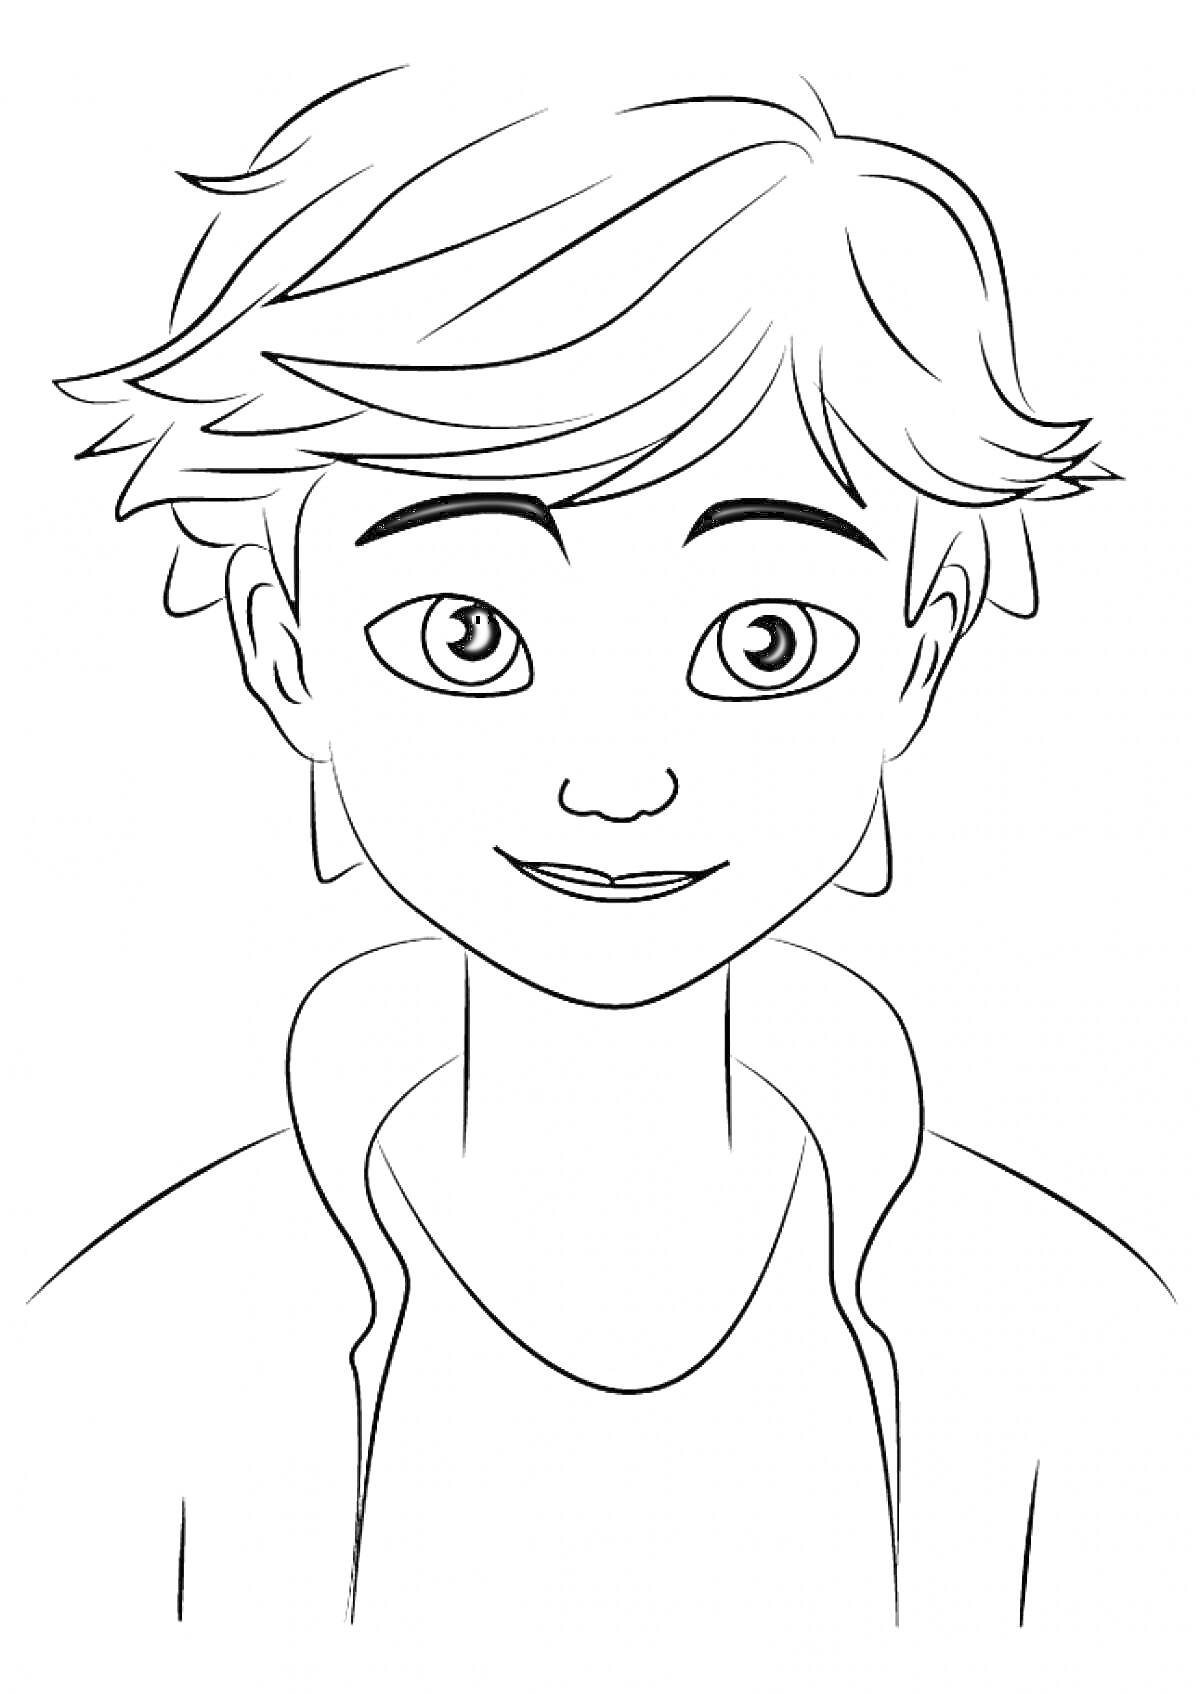 Раскраска Портрет молодого персонажа с короткими волосами и улыбкой из мультсериала «Леди Баг и Супер-Кот»